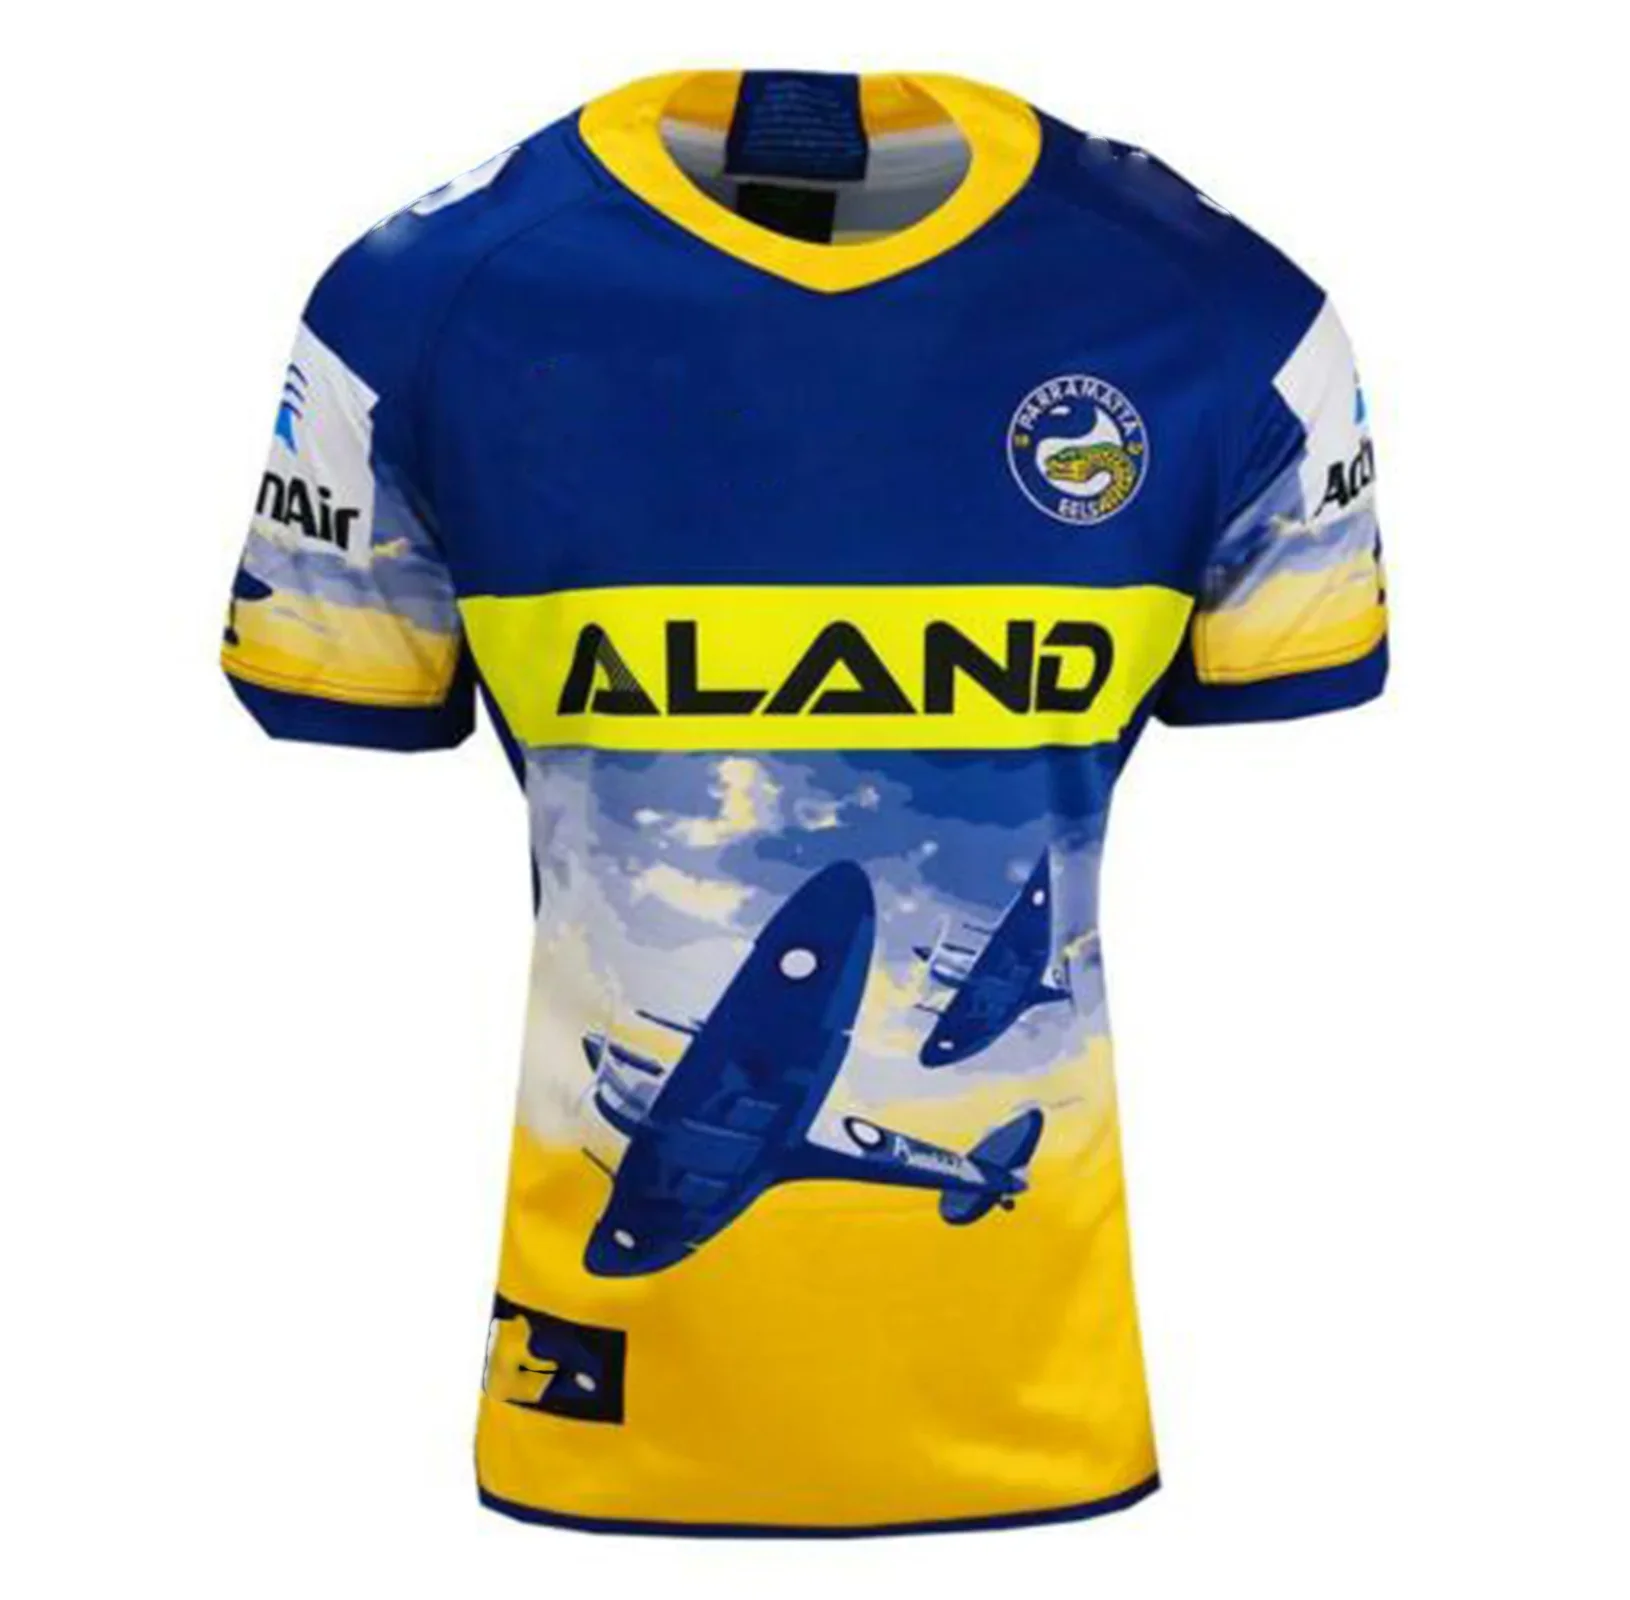 

2020 Parramatta Eels ANZAC Rugby Jersey Sport Shirt S-5XL